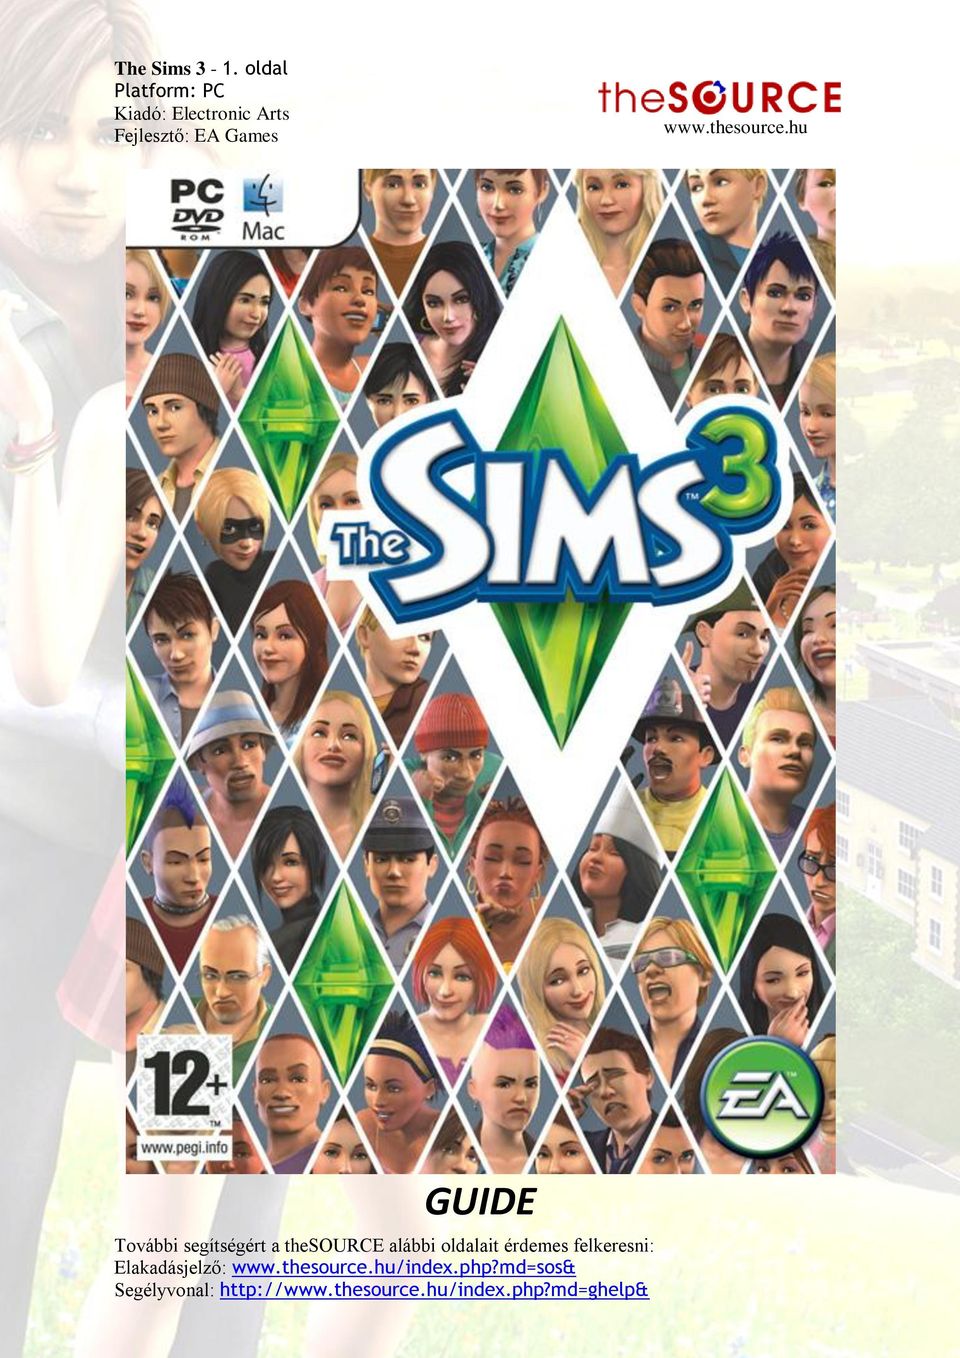 The Sims 3-1. oldal Platform: PC Kiadó: Electronic Arts Fejlesztő: EA  Games. - PDF Free Download